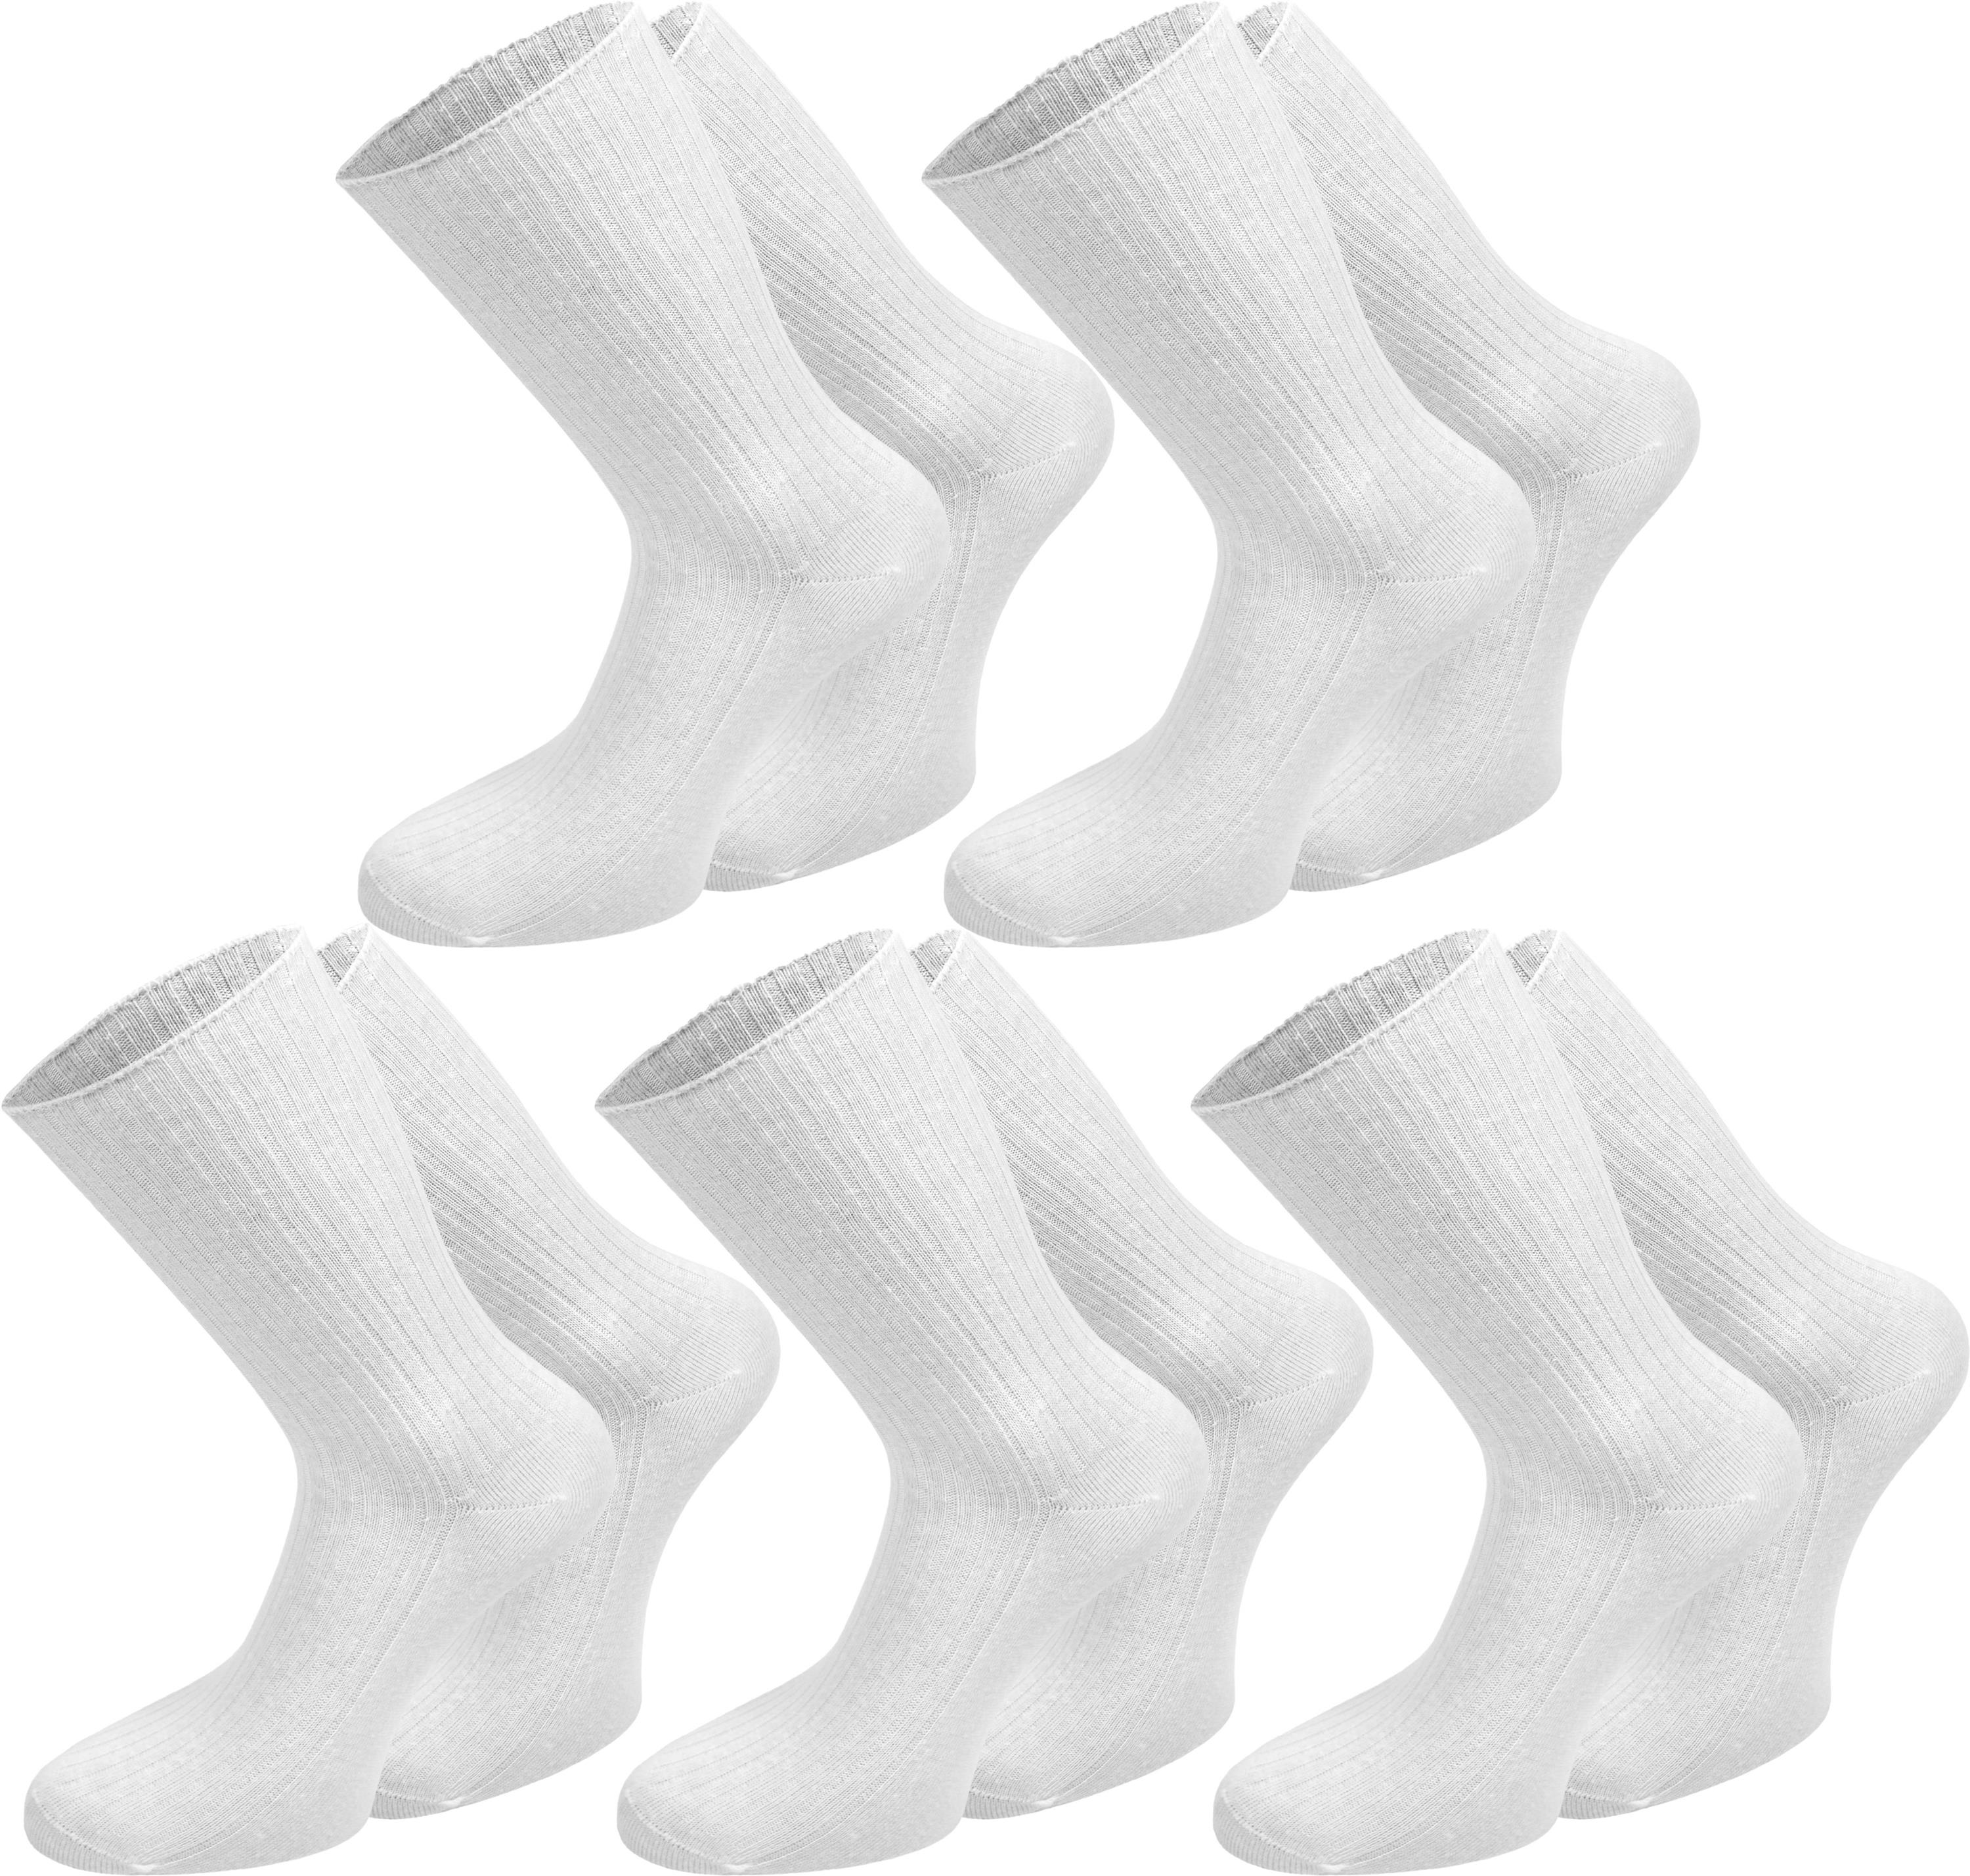 12 Paar Herren Socken ohne Gummi und ohne Naht 70%Wolle Top Qualität Art 225 